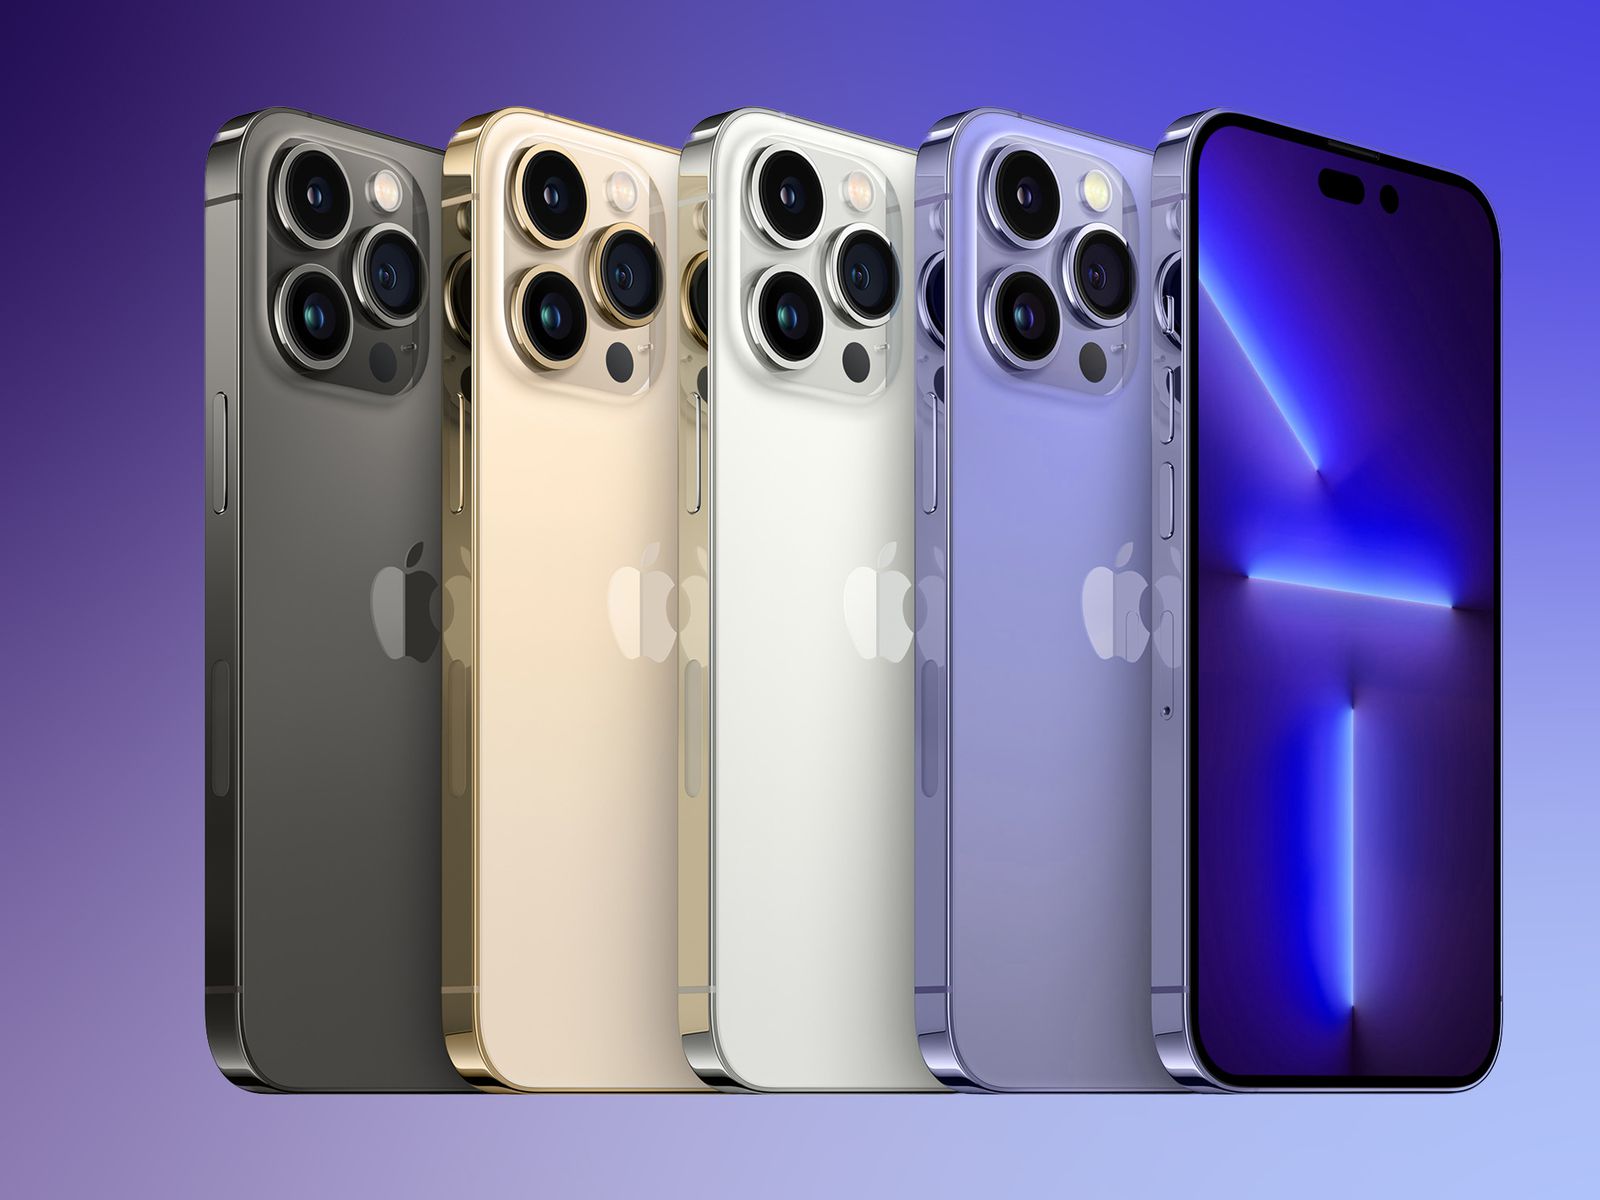 Với màu tím tươi thắm, iPhone 14 phiên bản màu tím nhạt sẽ mang đến cho bạn cảm giác mới lạ và đầy phấn khích. Hãy đến và khám phá hình ảnh của iPhone 14 màu tím để tận hưởng thiết kế ấn tượng của sản phẩm này!